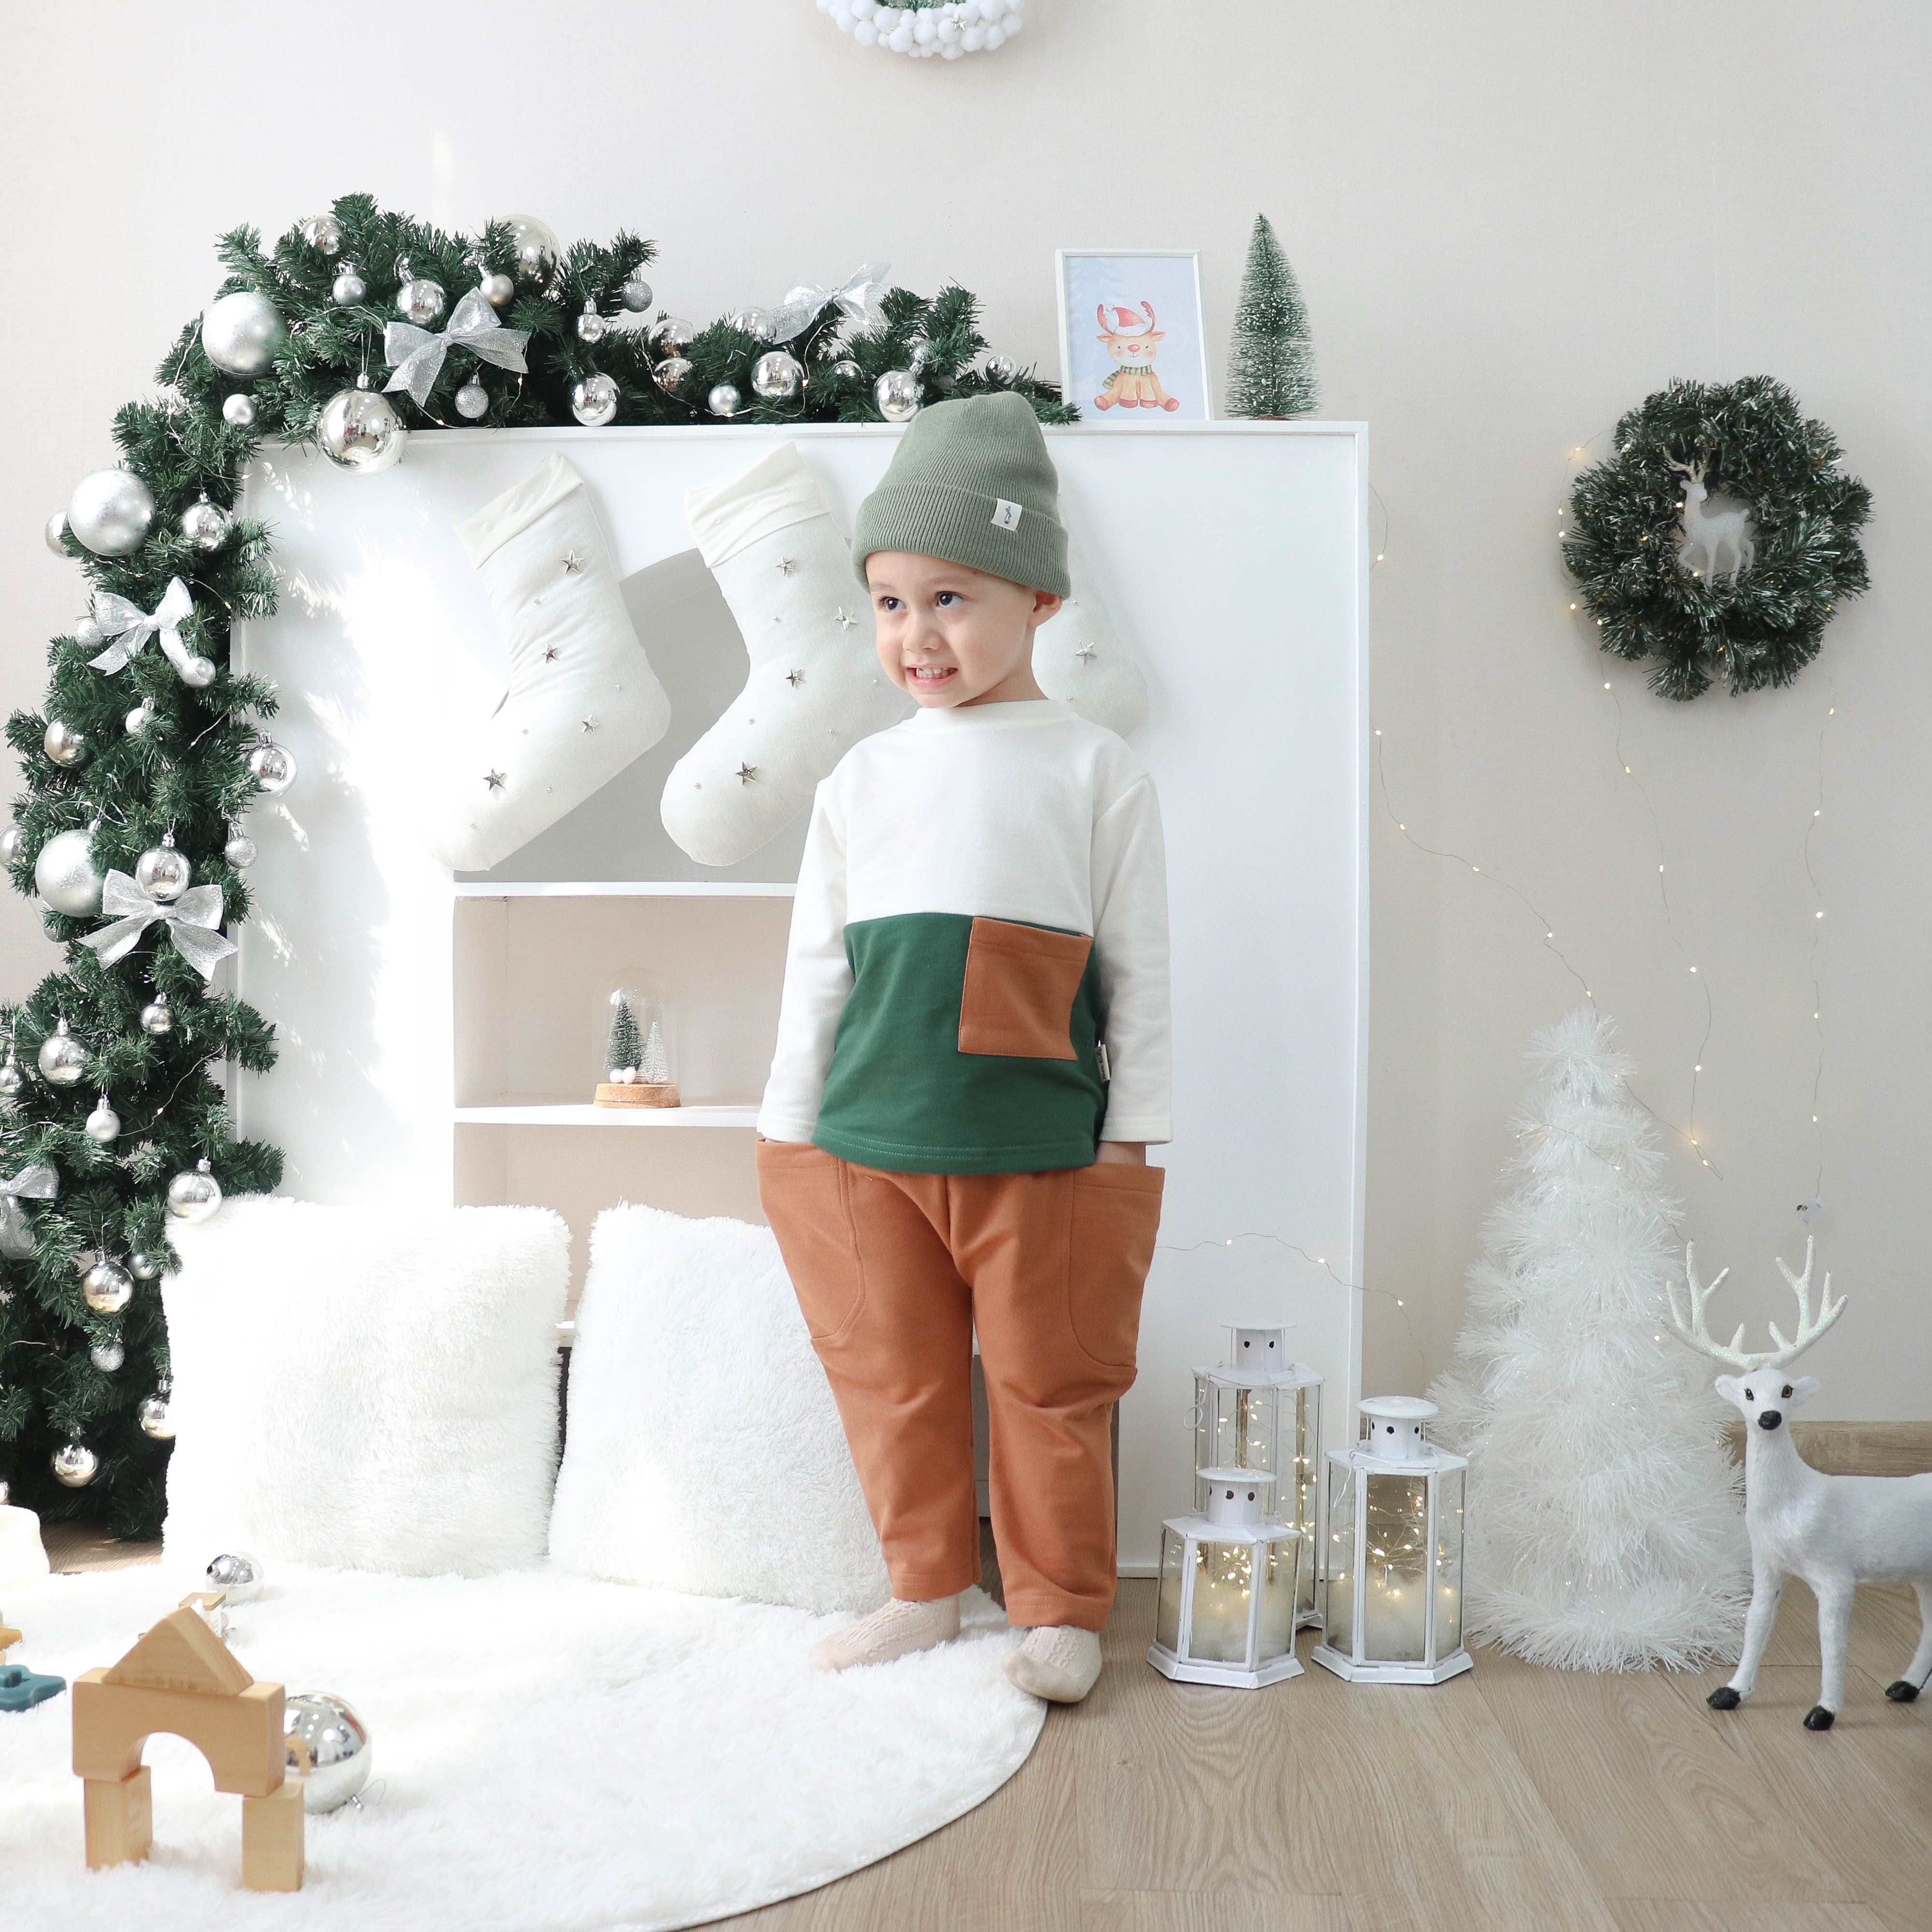 Nice Kids - Winter Three Tone Baby Set Unisex Setelan Baju Sweater dan Celana Panjang Anak Bayi (1-4 Tahun)